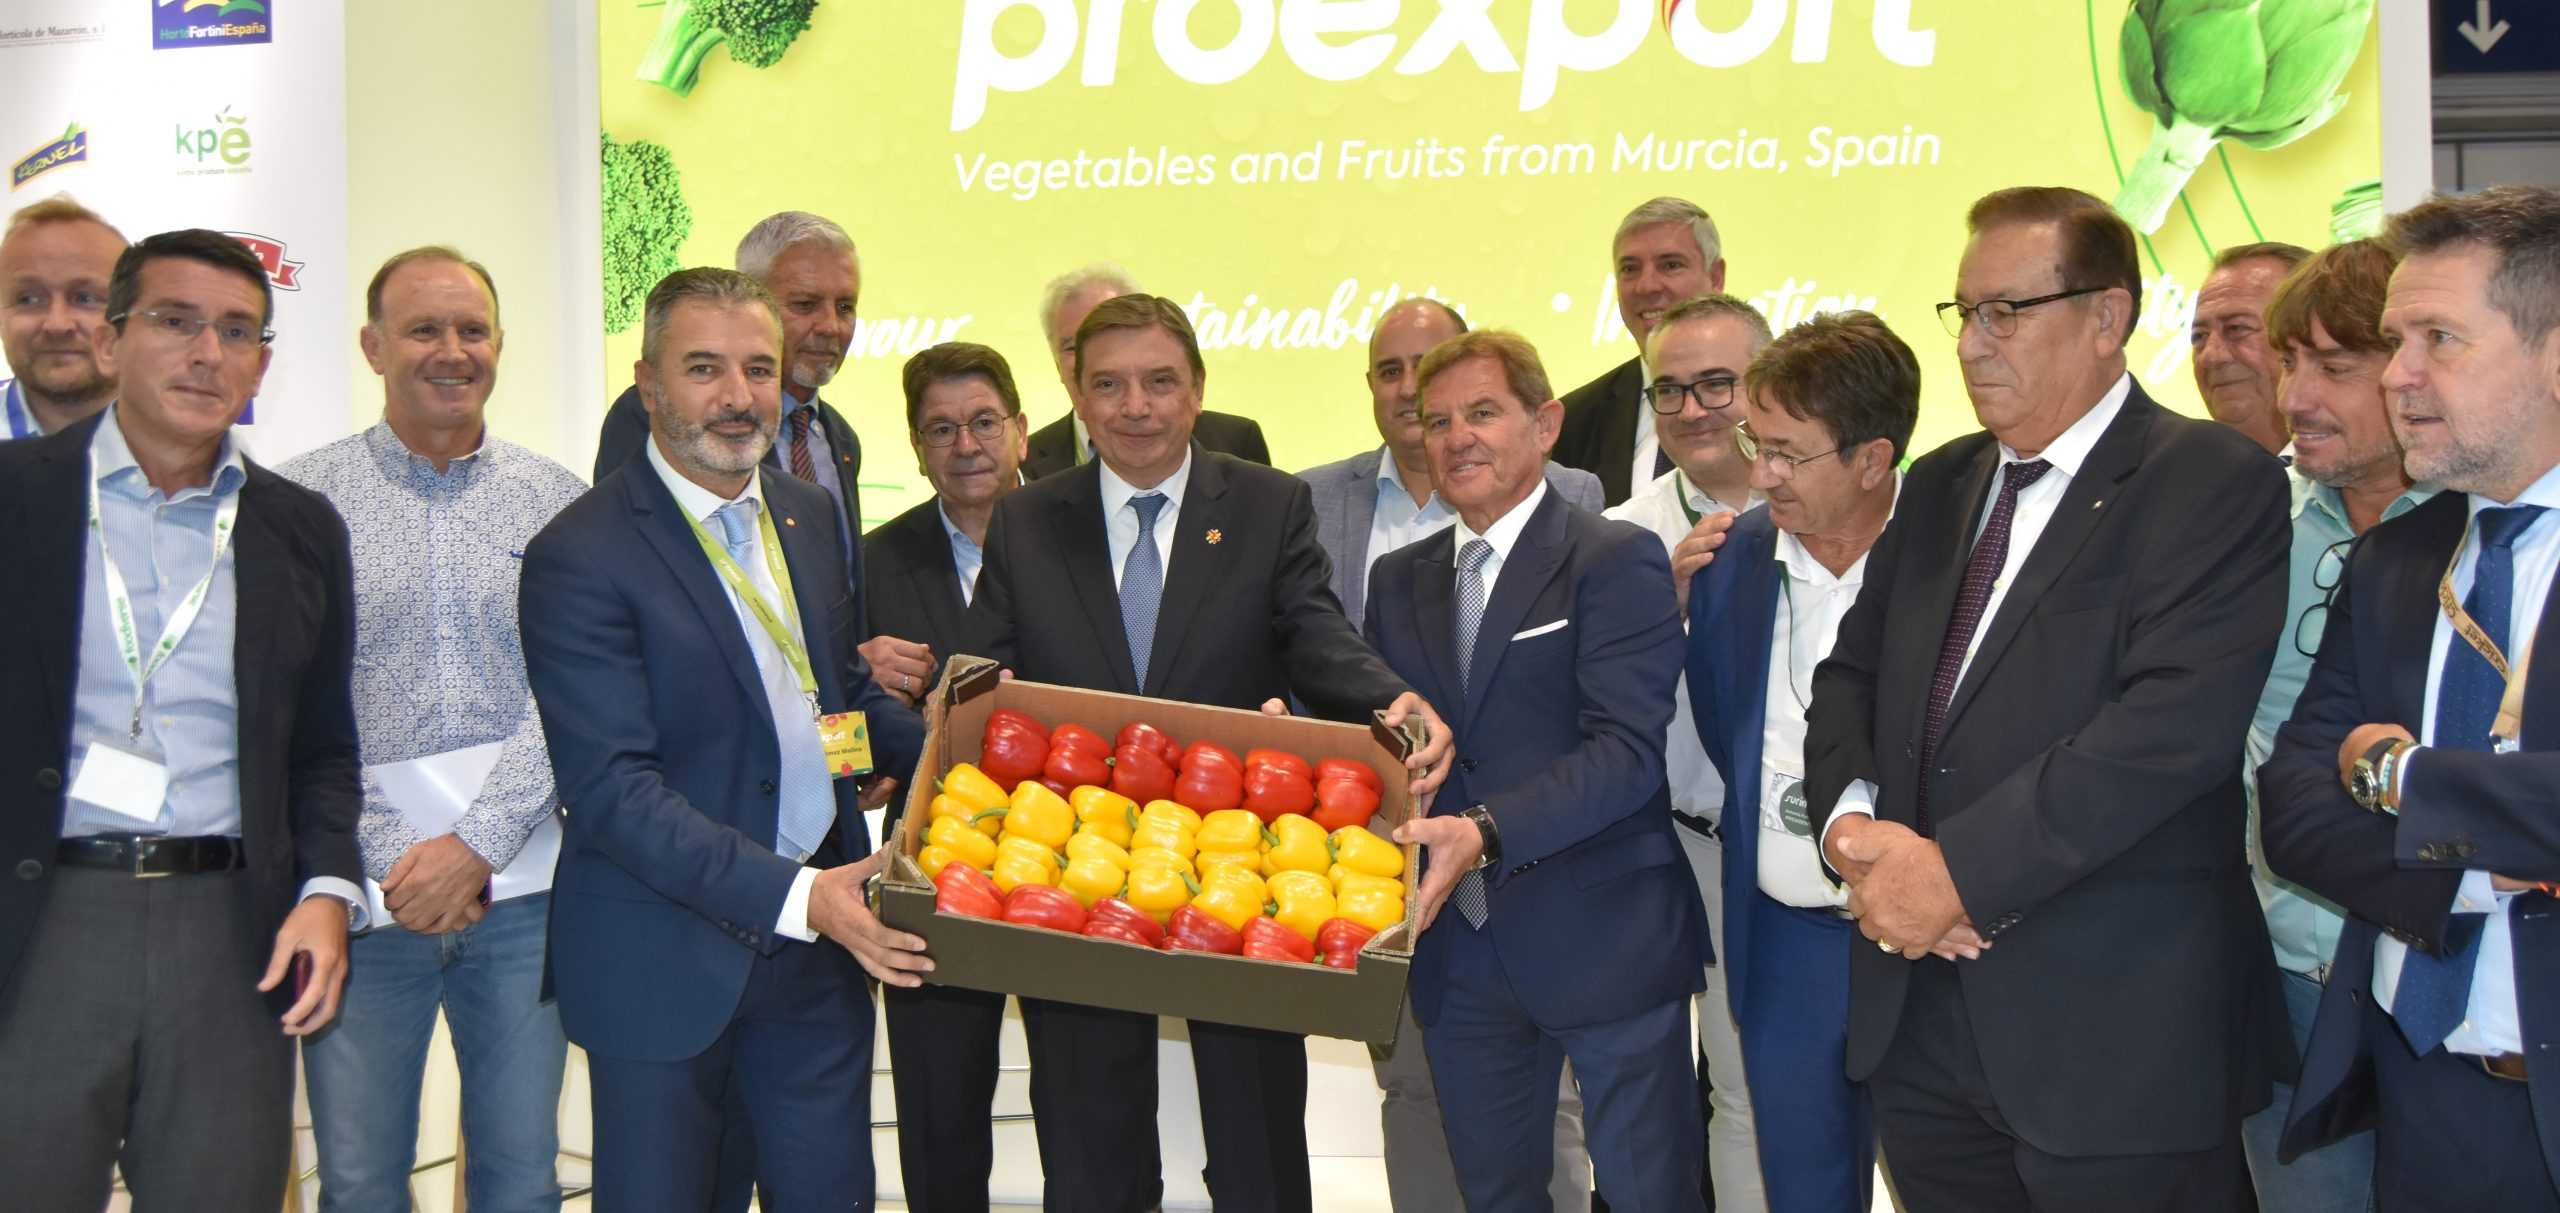 Proexport pide al ministro de Agricultura que se implique con el Trasvase Tajo-Segura